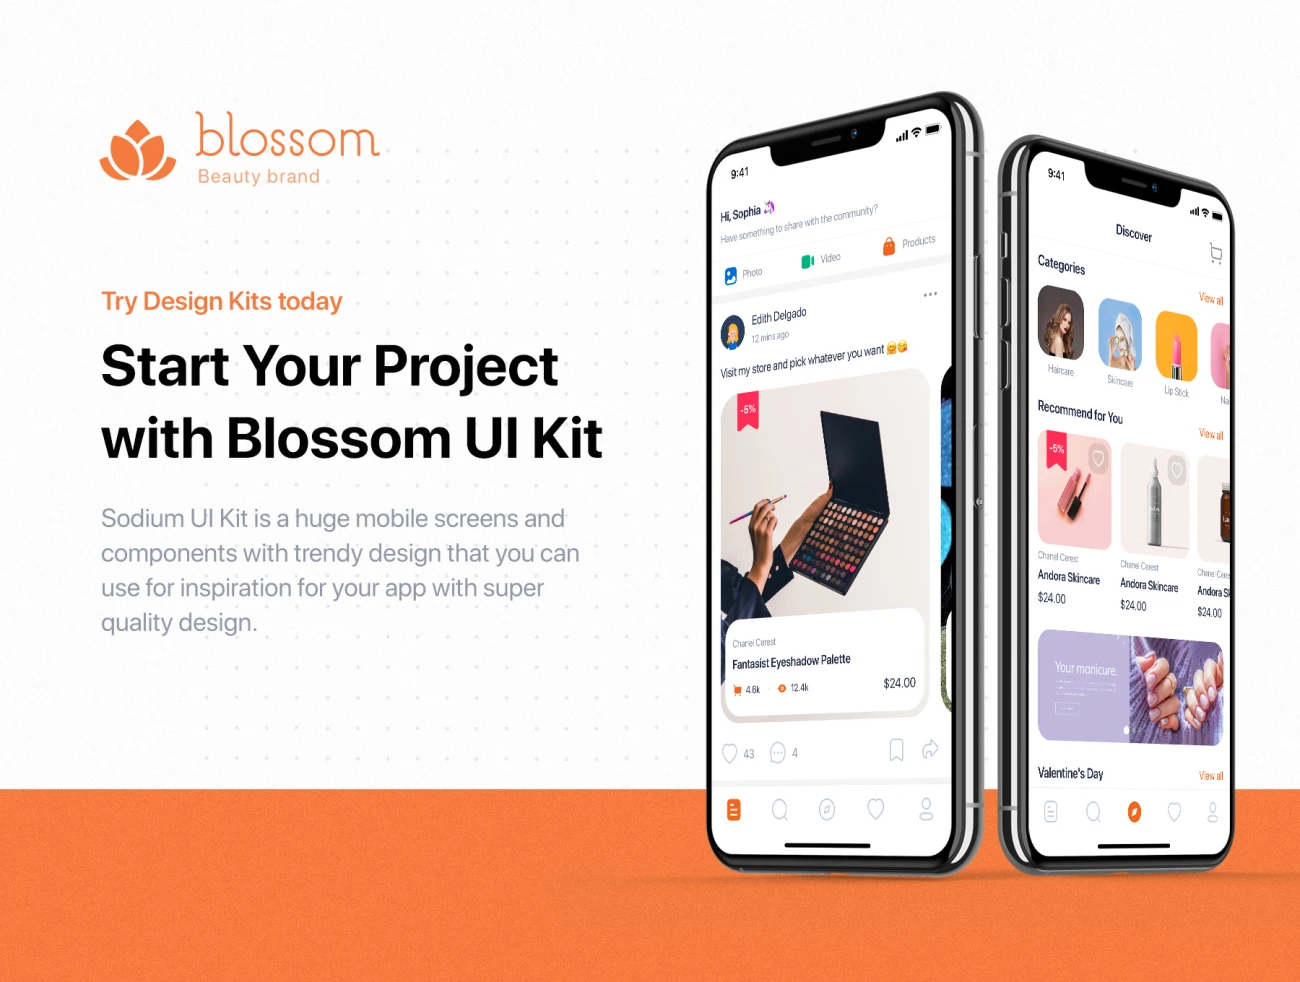 Blossom - Beauty mobile UI Kit 33屏美容美妆应用界面设计套件-3D/图标、UI/UX、ui套件、付款、列表、卡片式、图表、应用、支付、注册、网购、详情-到位啦UI